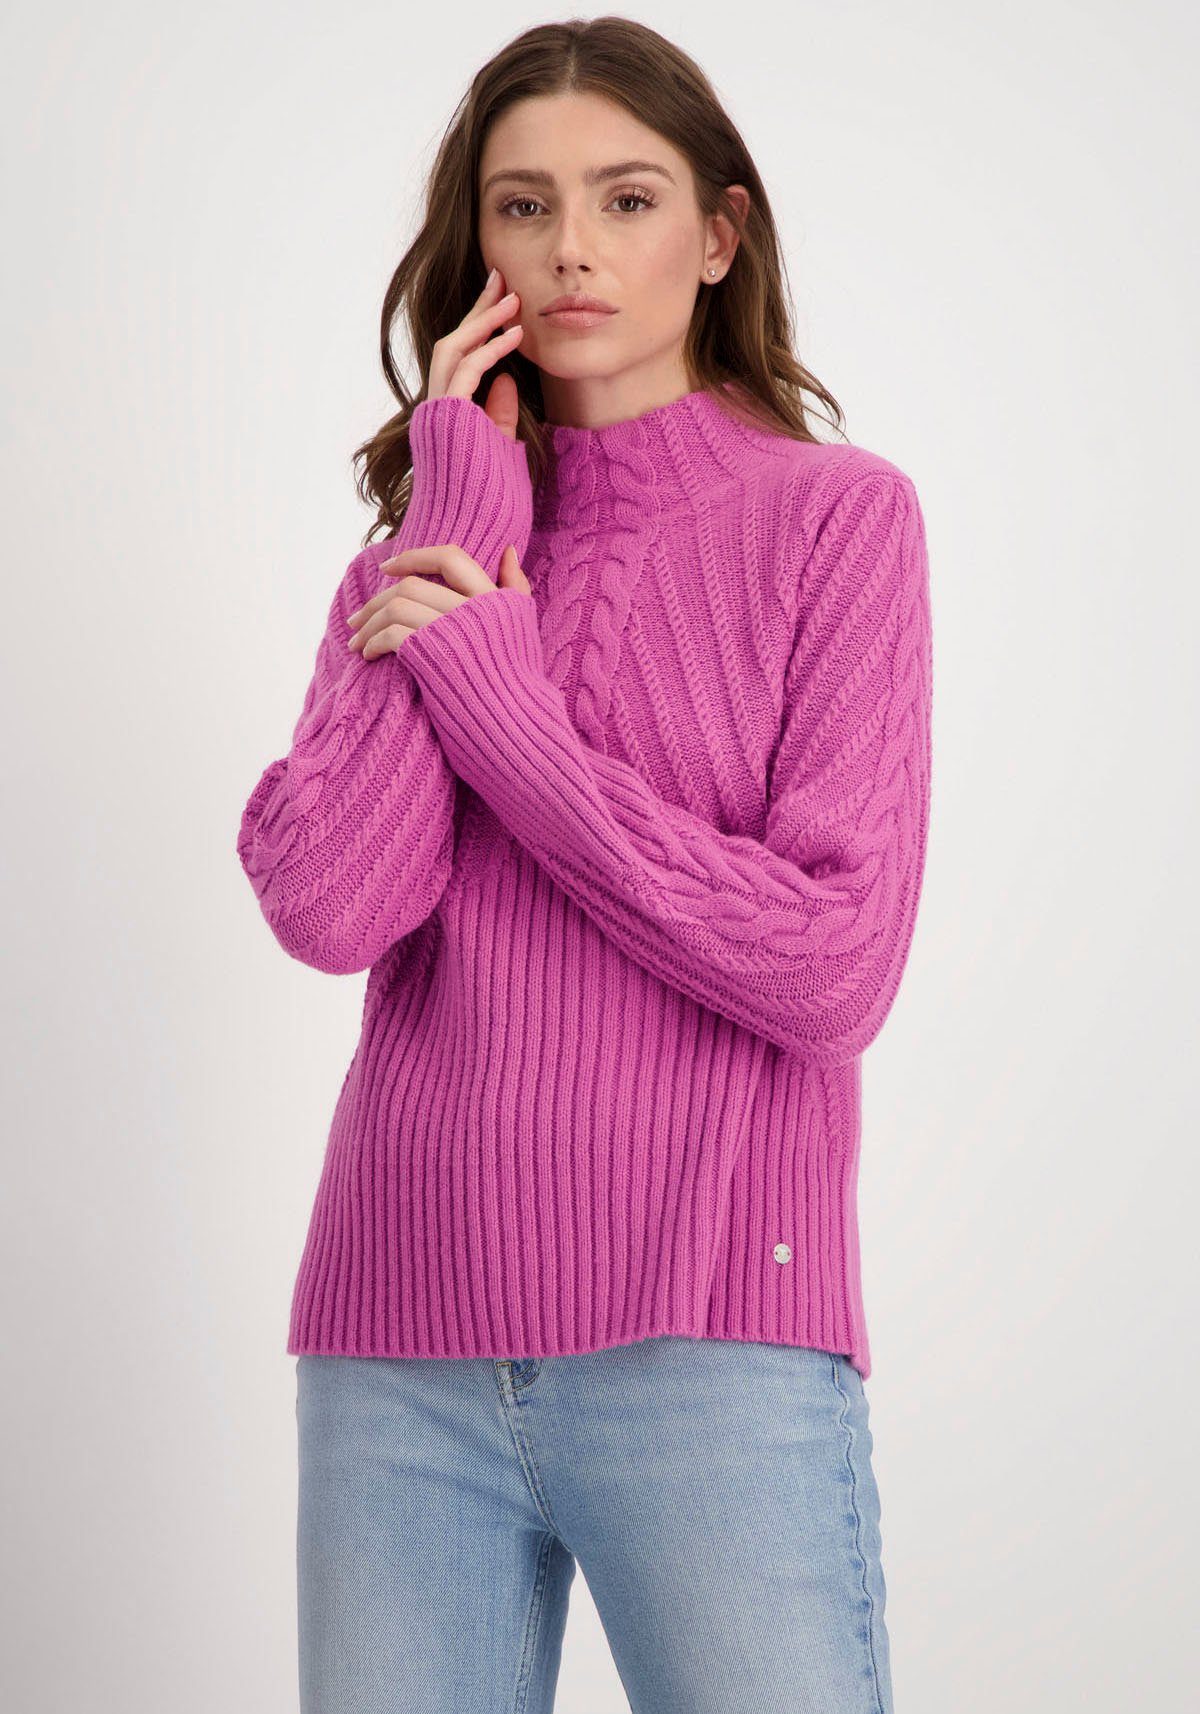 Monari Stehkragenpullover Pullover Zopfmix mit Zopfmuster und Rippstruktur deep pink